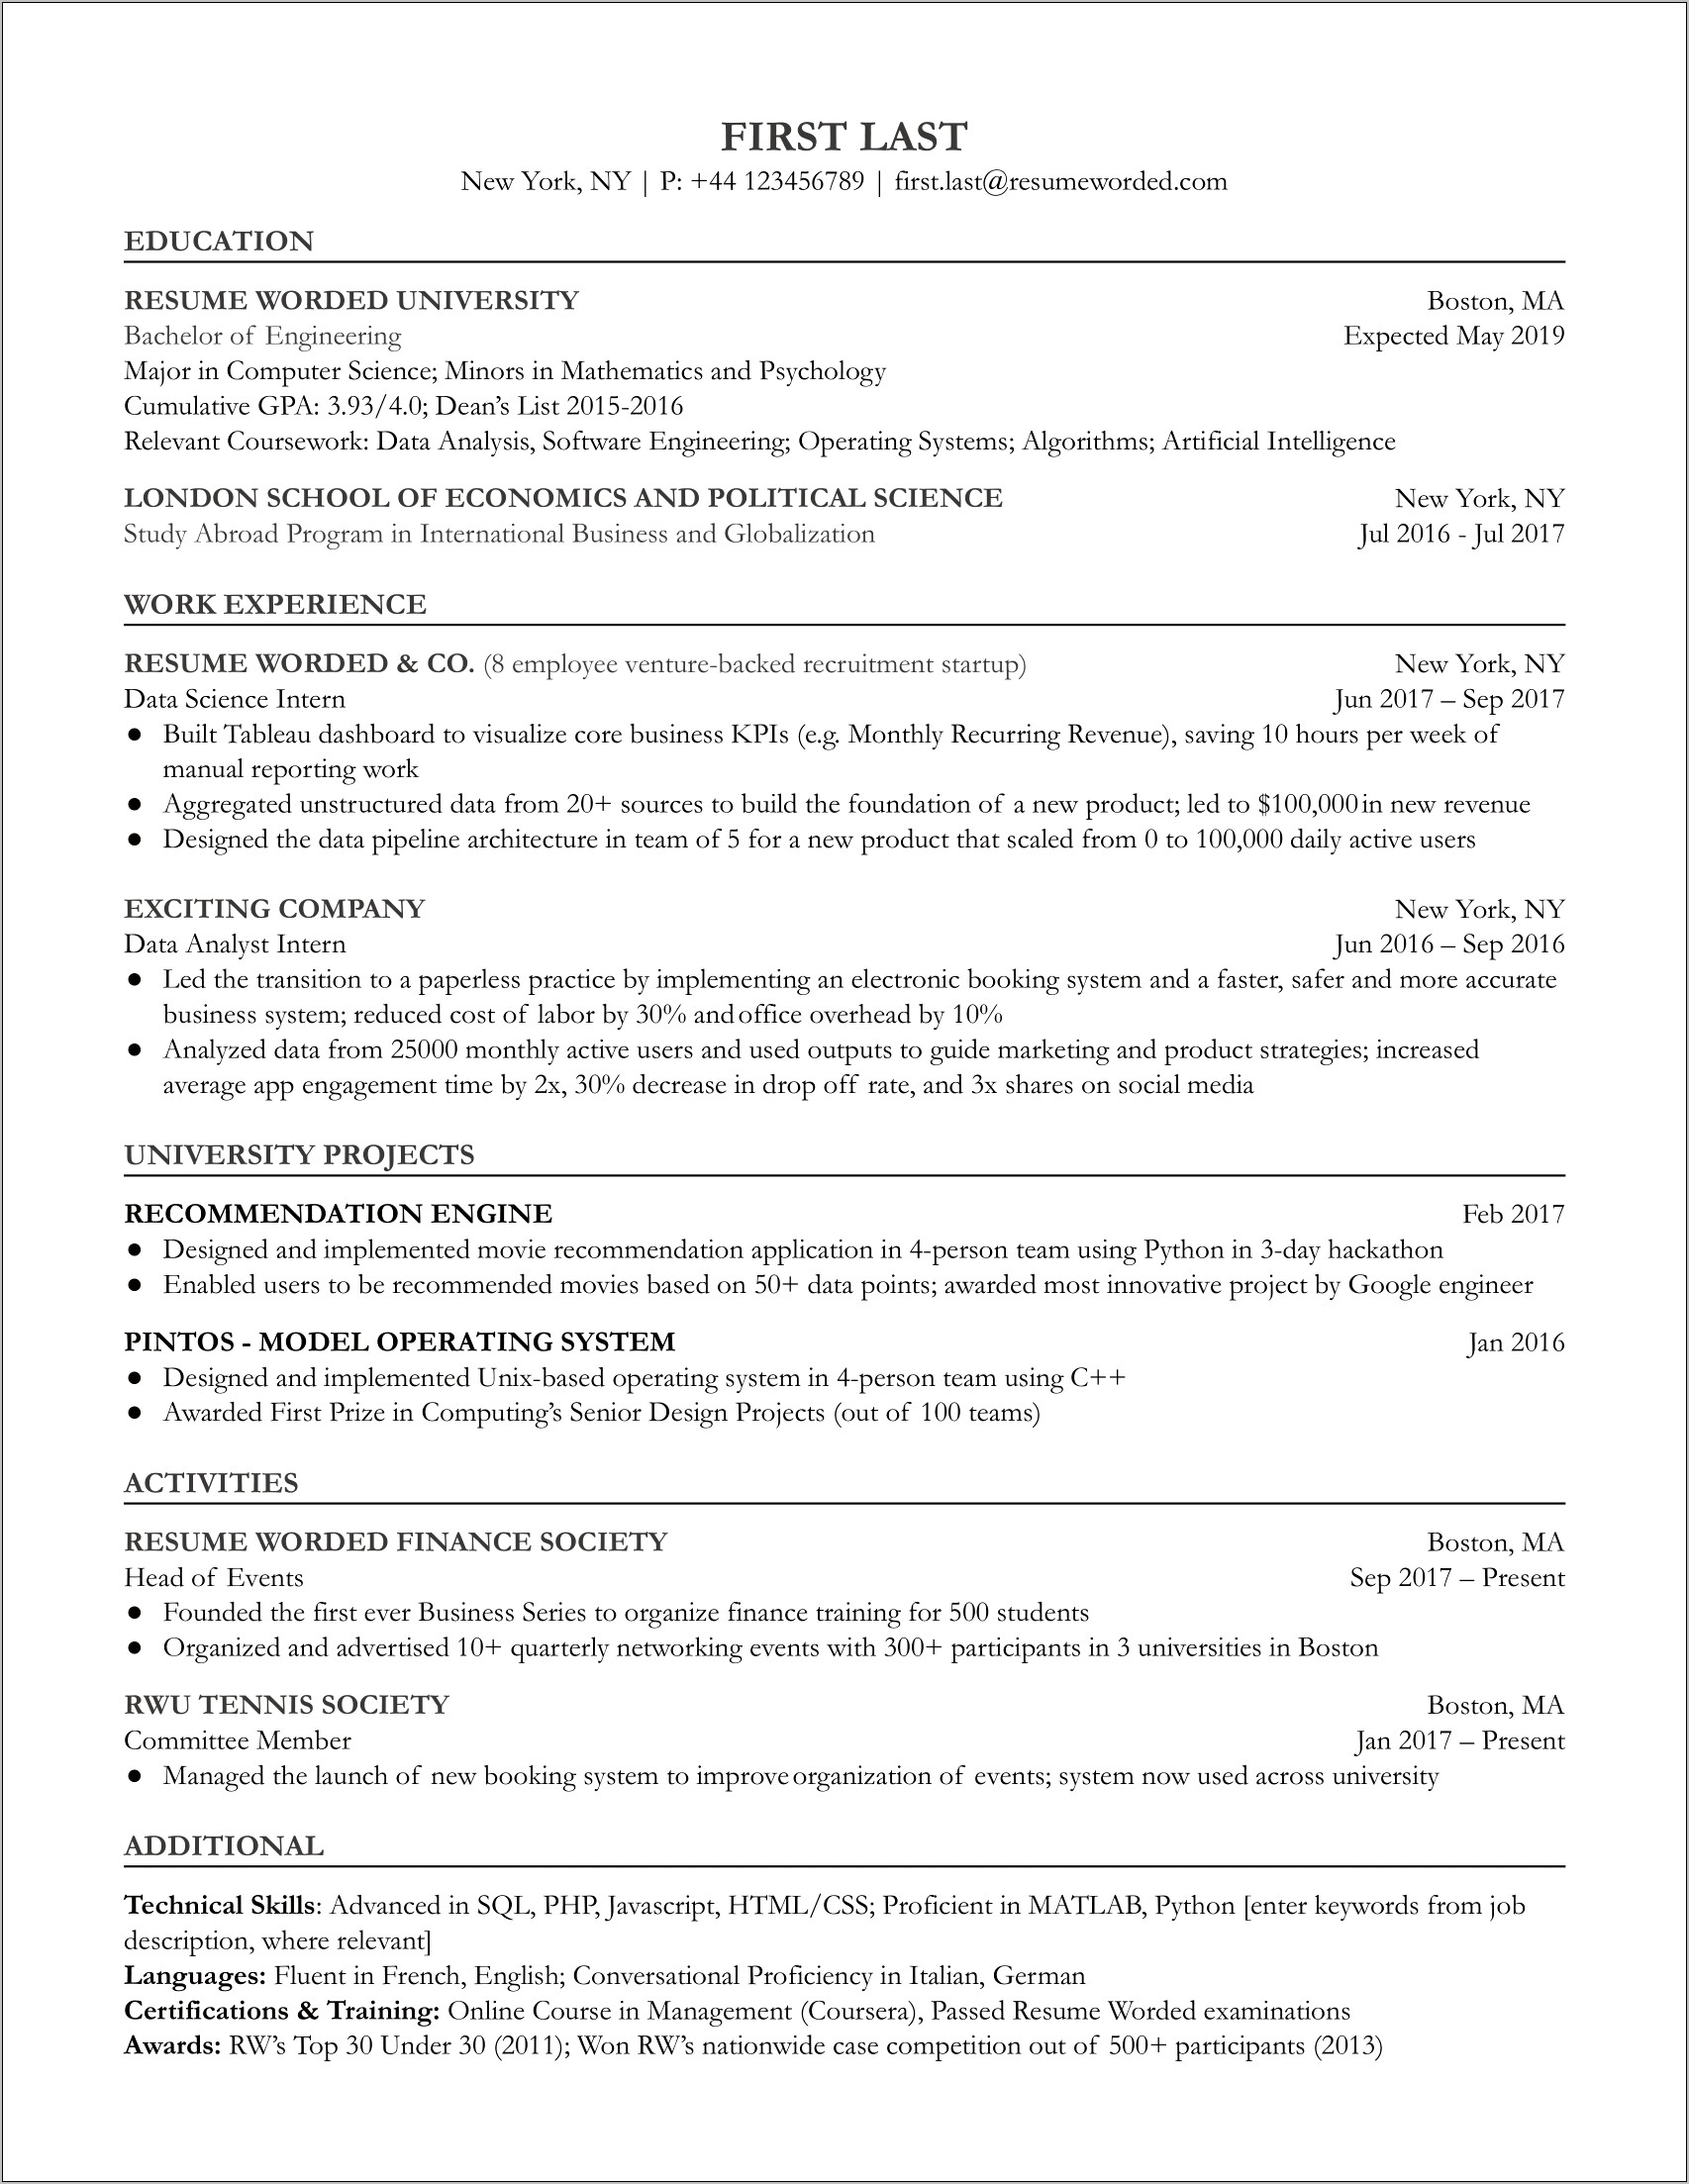 Preparing Different Resume For Data Entry Level Jobs